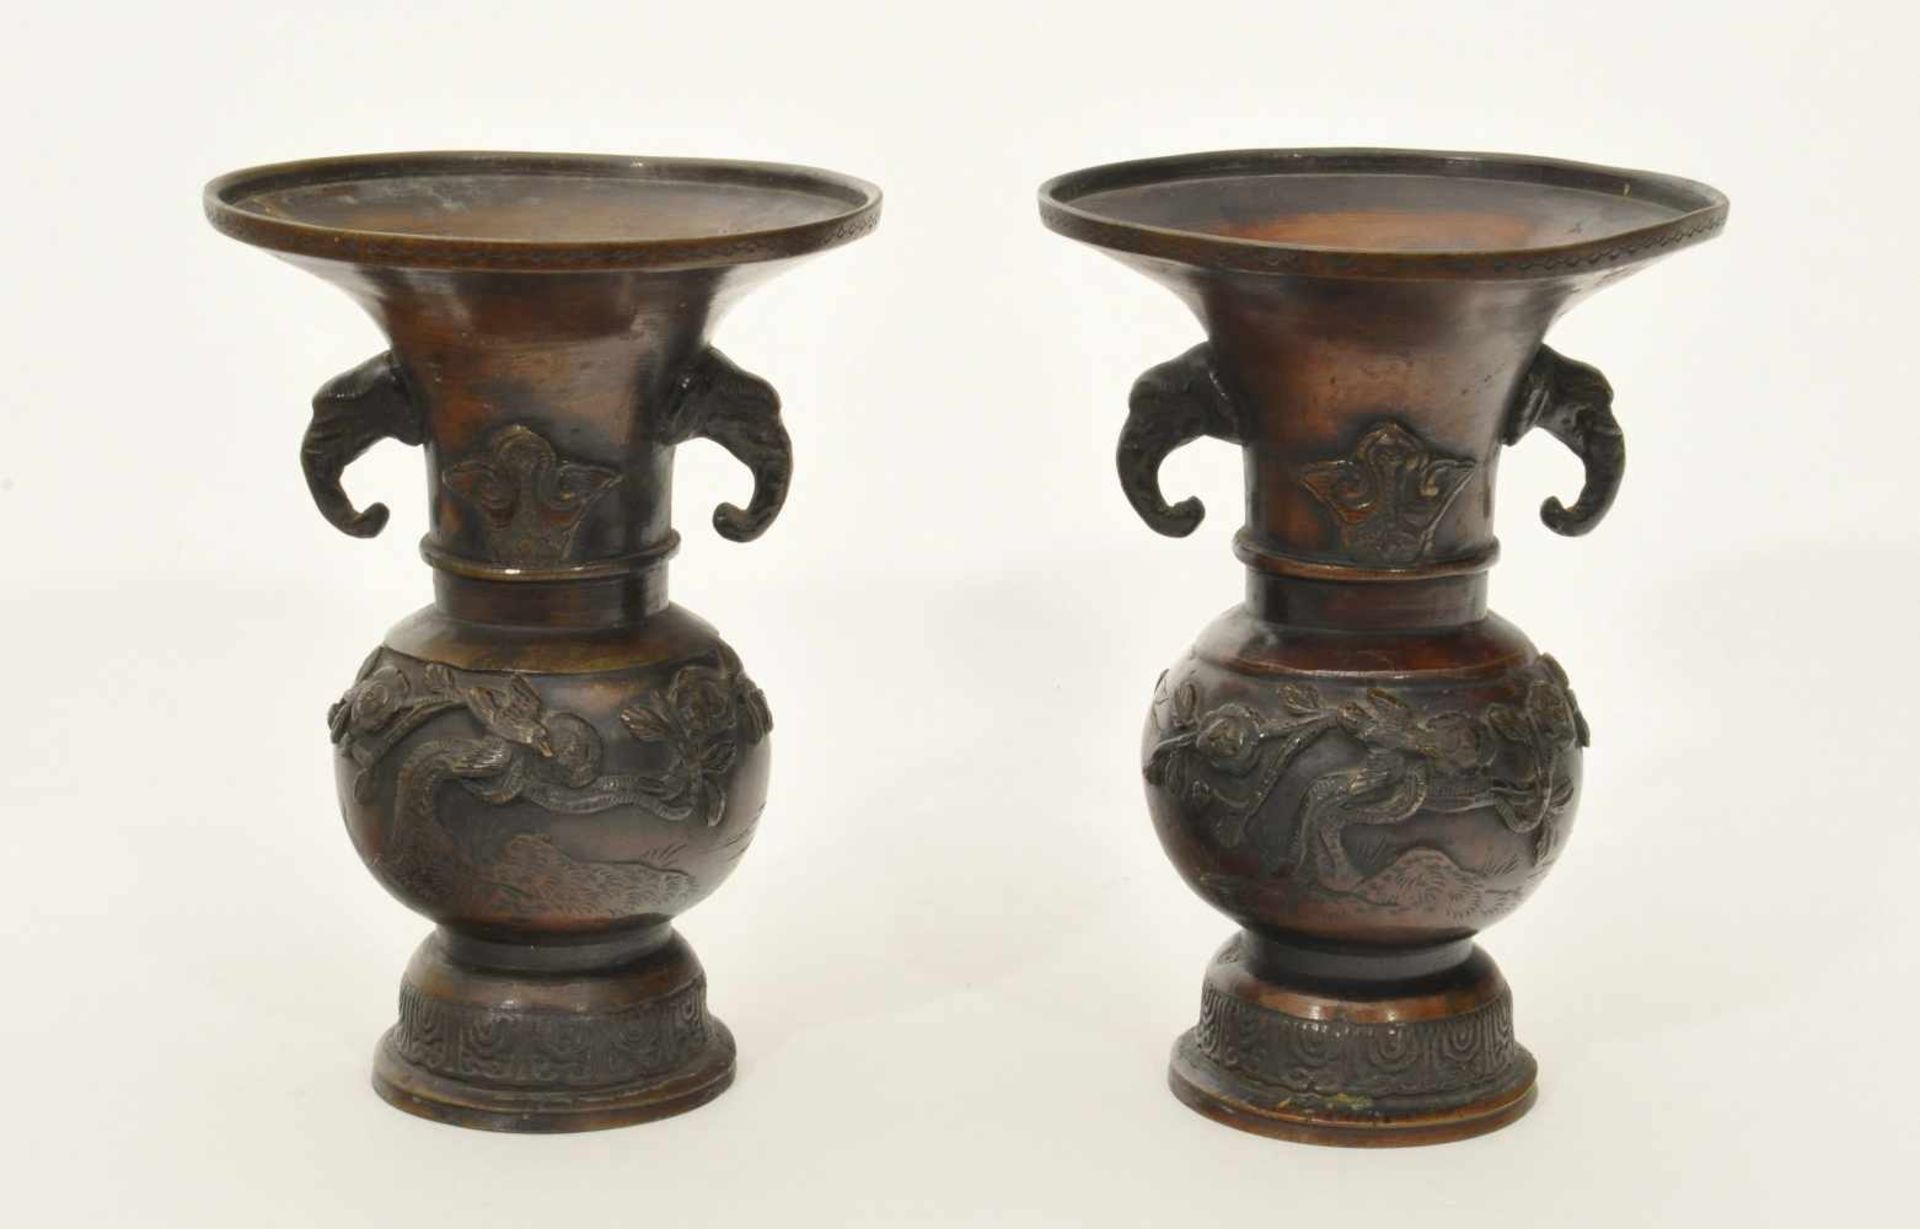 Vasenpaar China, 19. Jh., Qing Dynastie, Bronze, fein ornamentiert und ziseliert, halbplastische